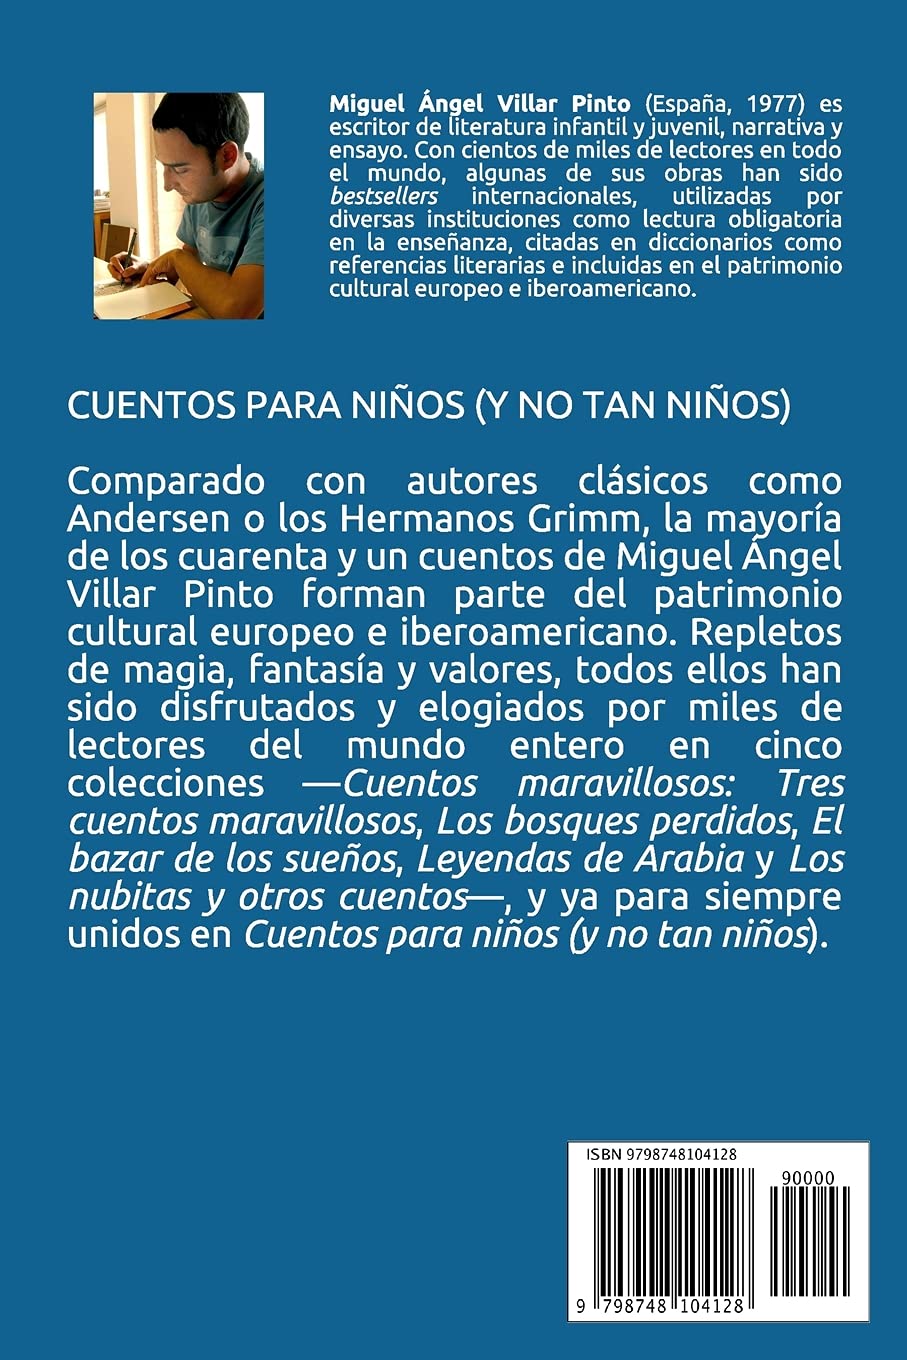 Cuentos para niños (y no tan niños) (Cuentos infantiles) (Spanish Edition)